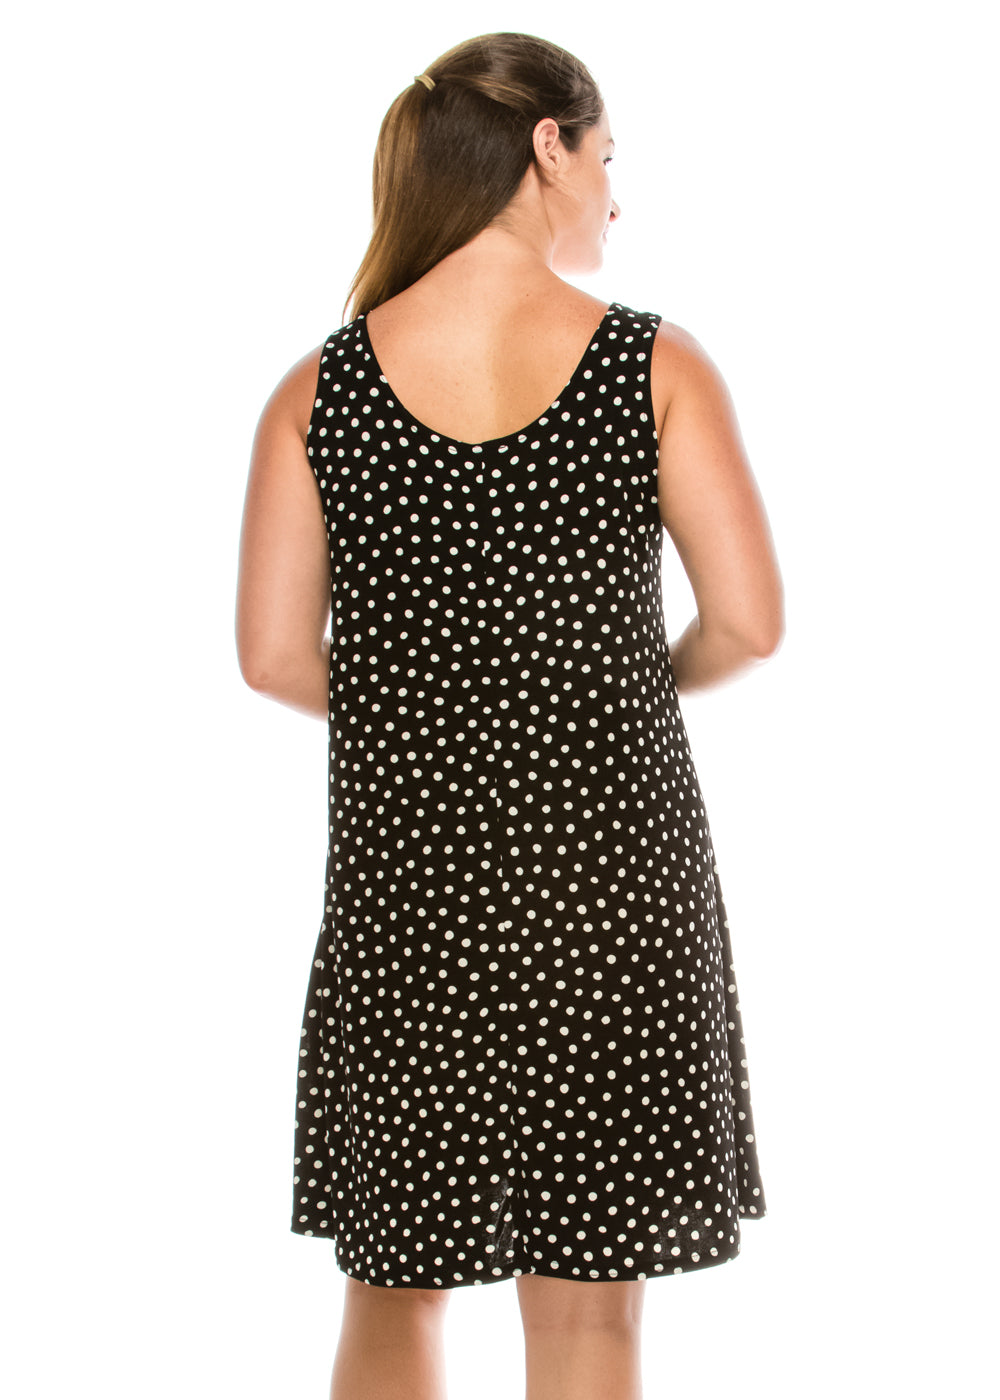 Jostar Women's Stretchy Missy Tank Dress Print, 703BN-TP-W032 - Jostar Online